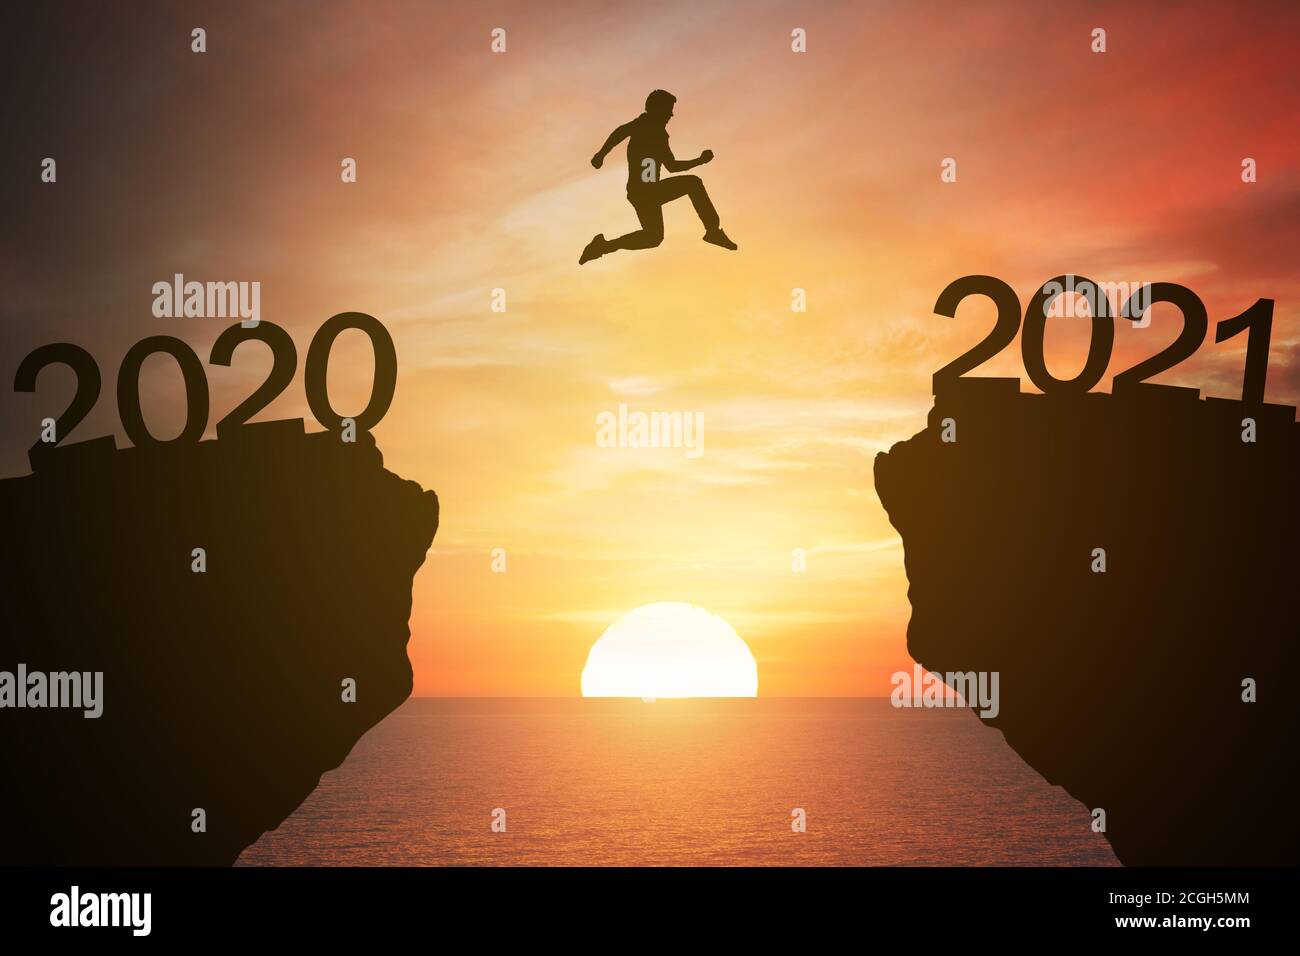 silhouette homme saut de la montagne de 2020 à 2021 ans avec le coucher du soleil ou le lever du soleil fond. Croissance heureuse et réussie avec la nouvelle année 2021 conce Banque D'Images